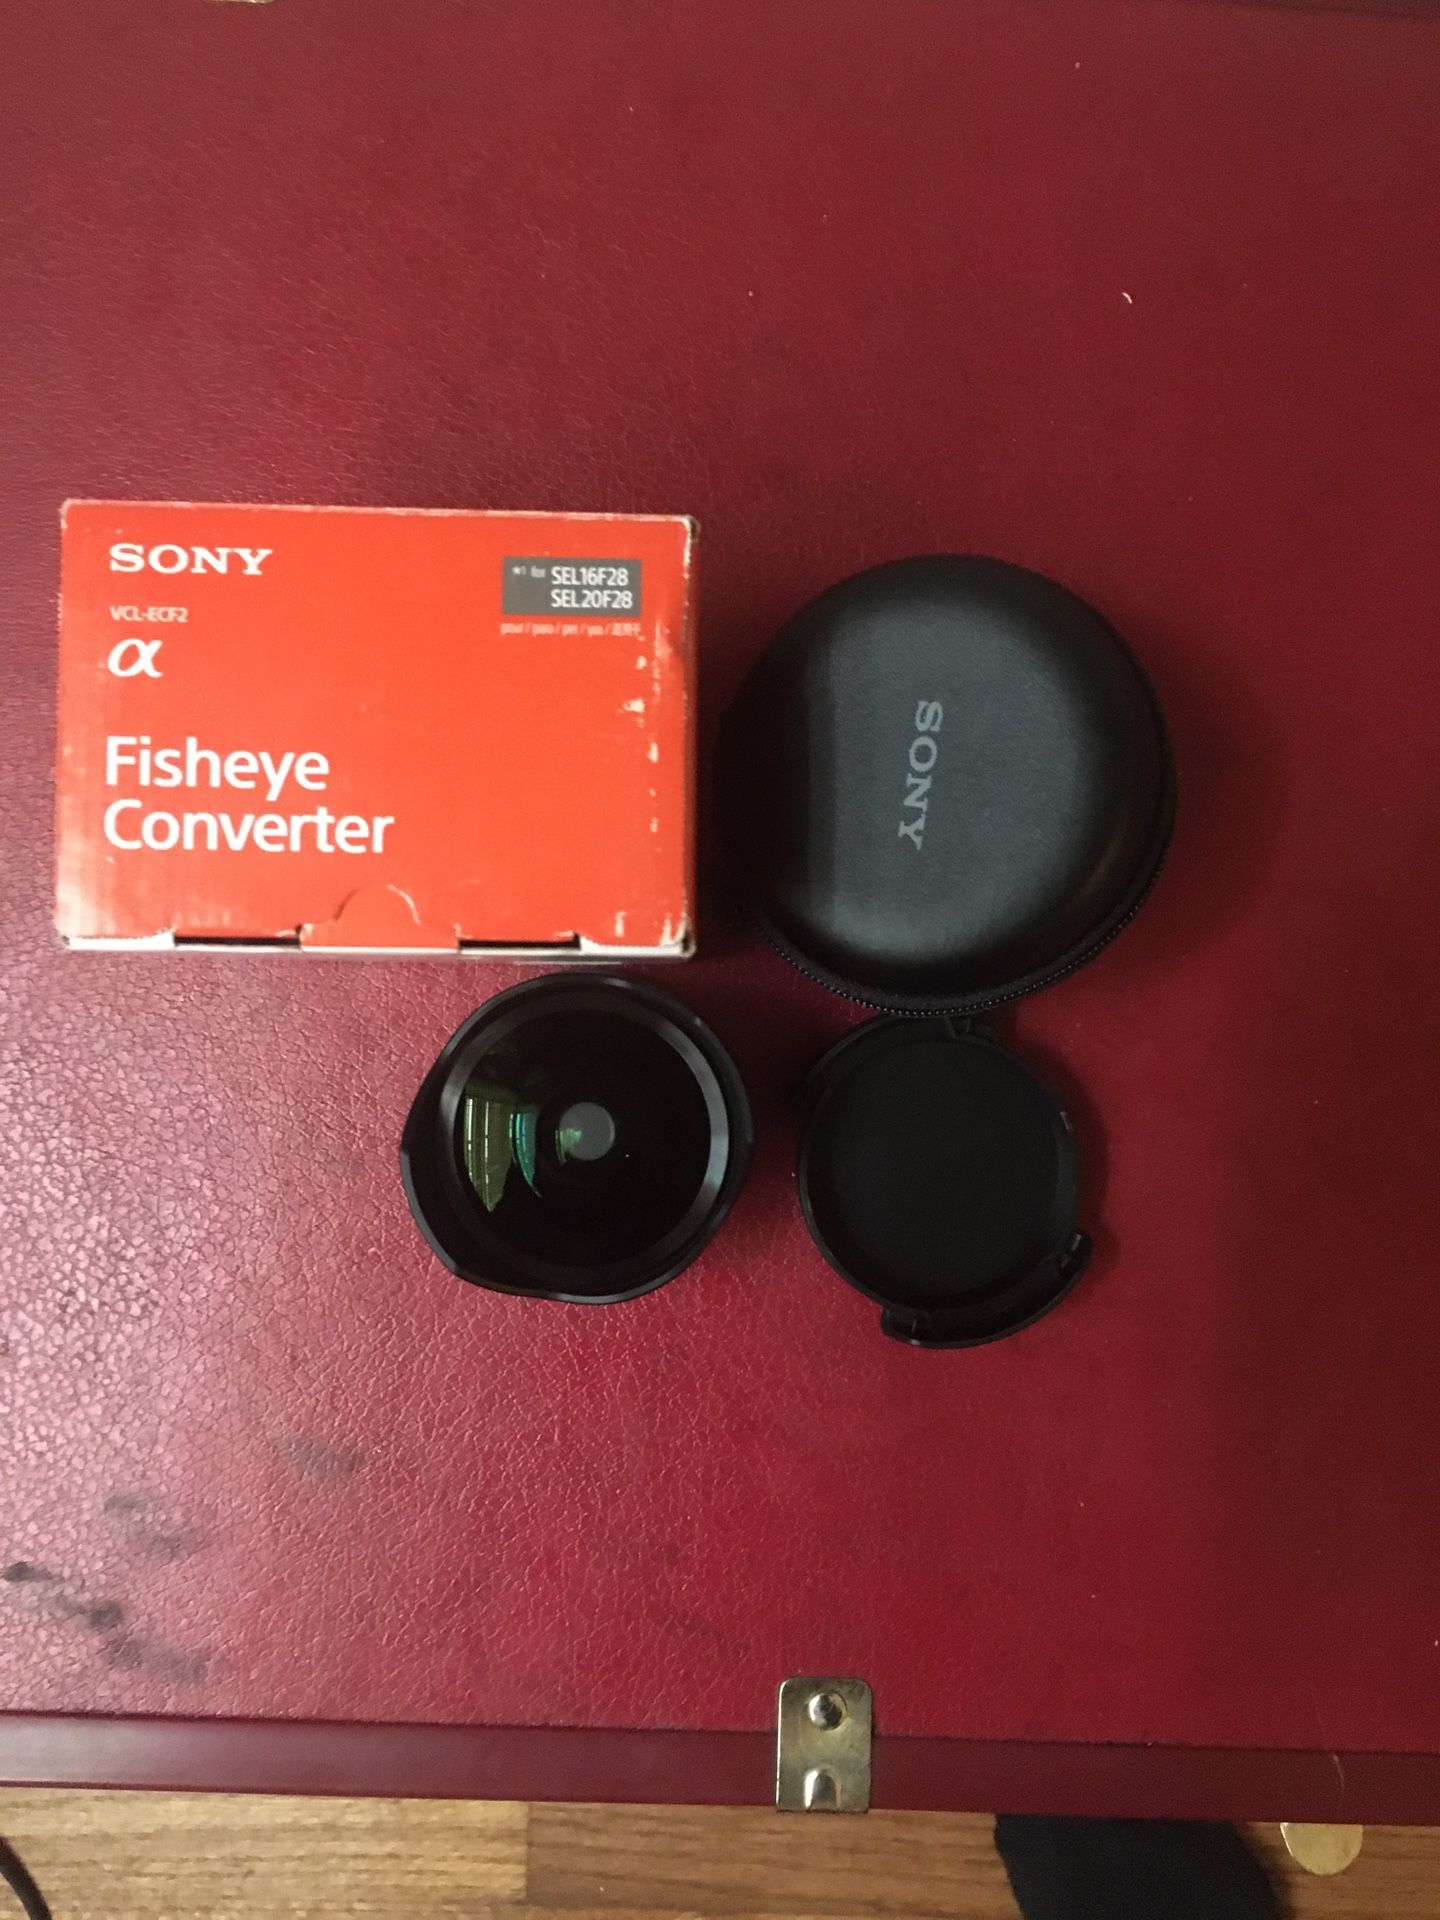 Sony fisheye converter